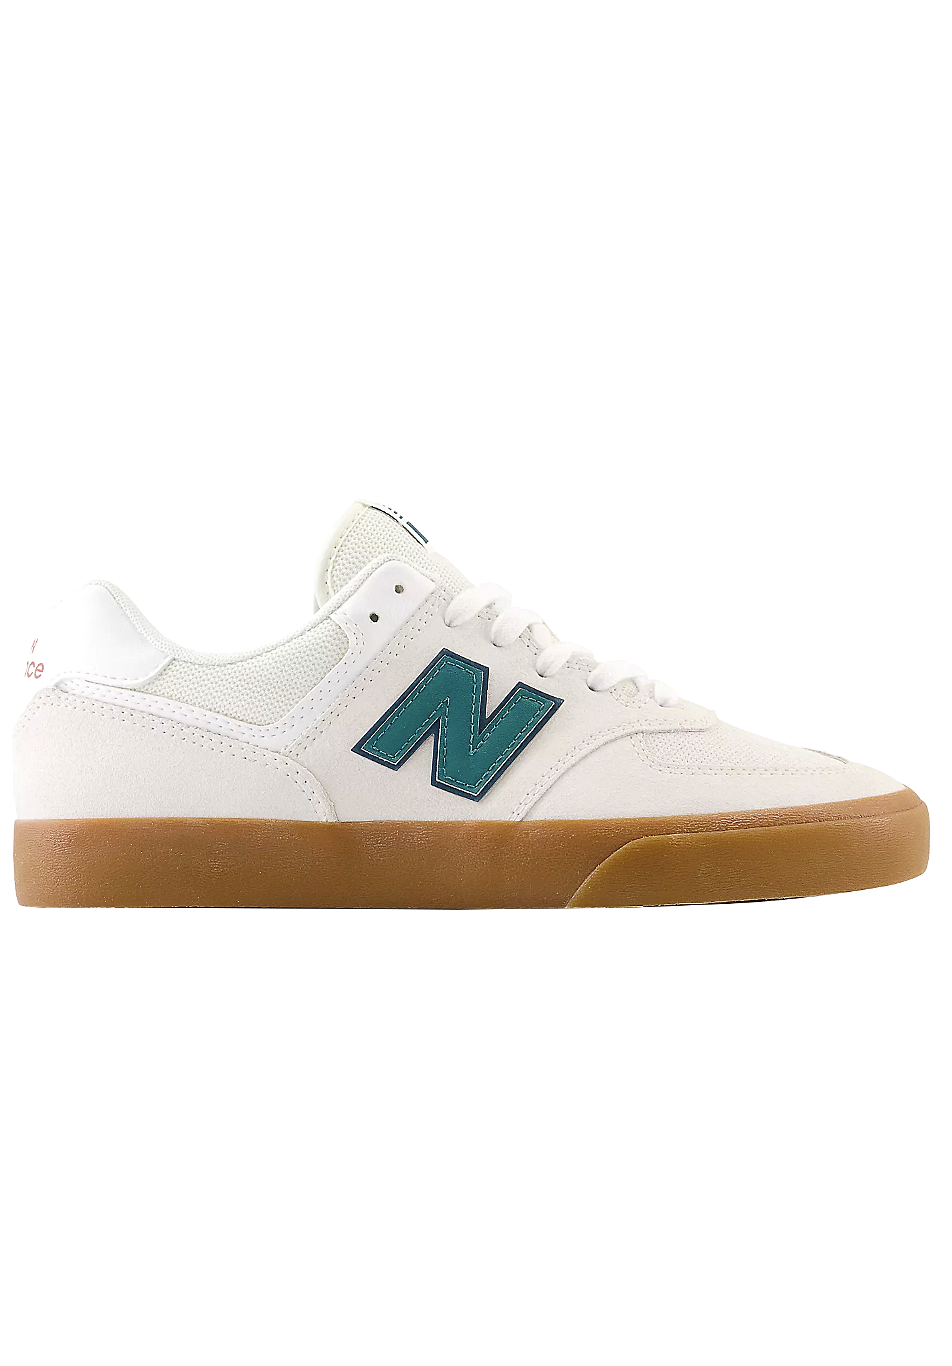 NM574VWG Vulc Shoe White Gum